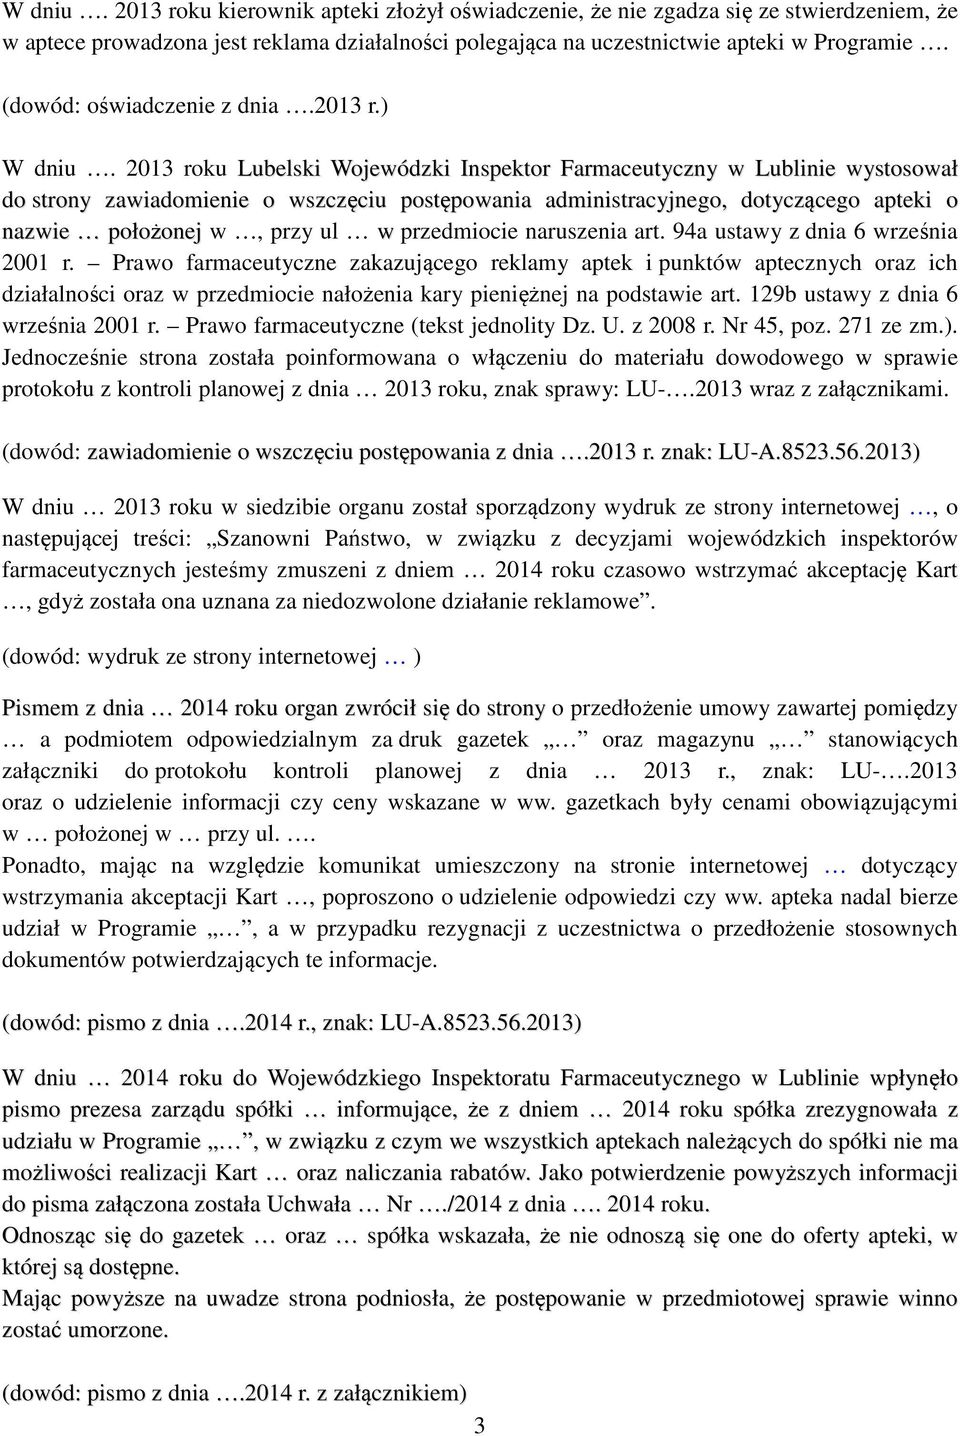 2013 roku Lubelski Wojewódzki Inspektor Farmaceutyczny w Lublinie wystosował do strony zawiadomienie o wszczęciu postępowania administracyjnego, dotyczącego apteki o nazwie położonej w, przy ul w